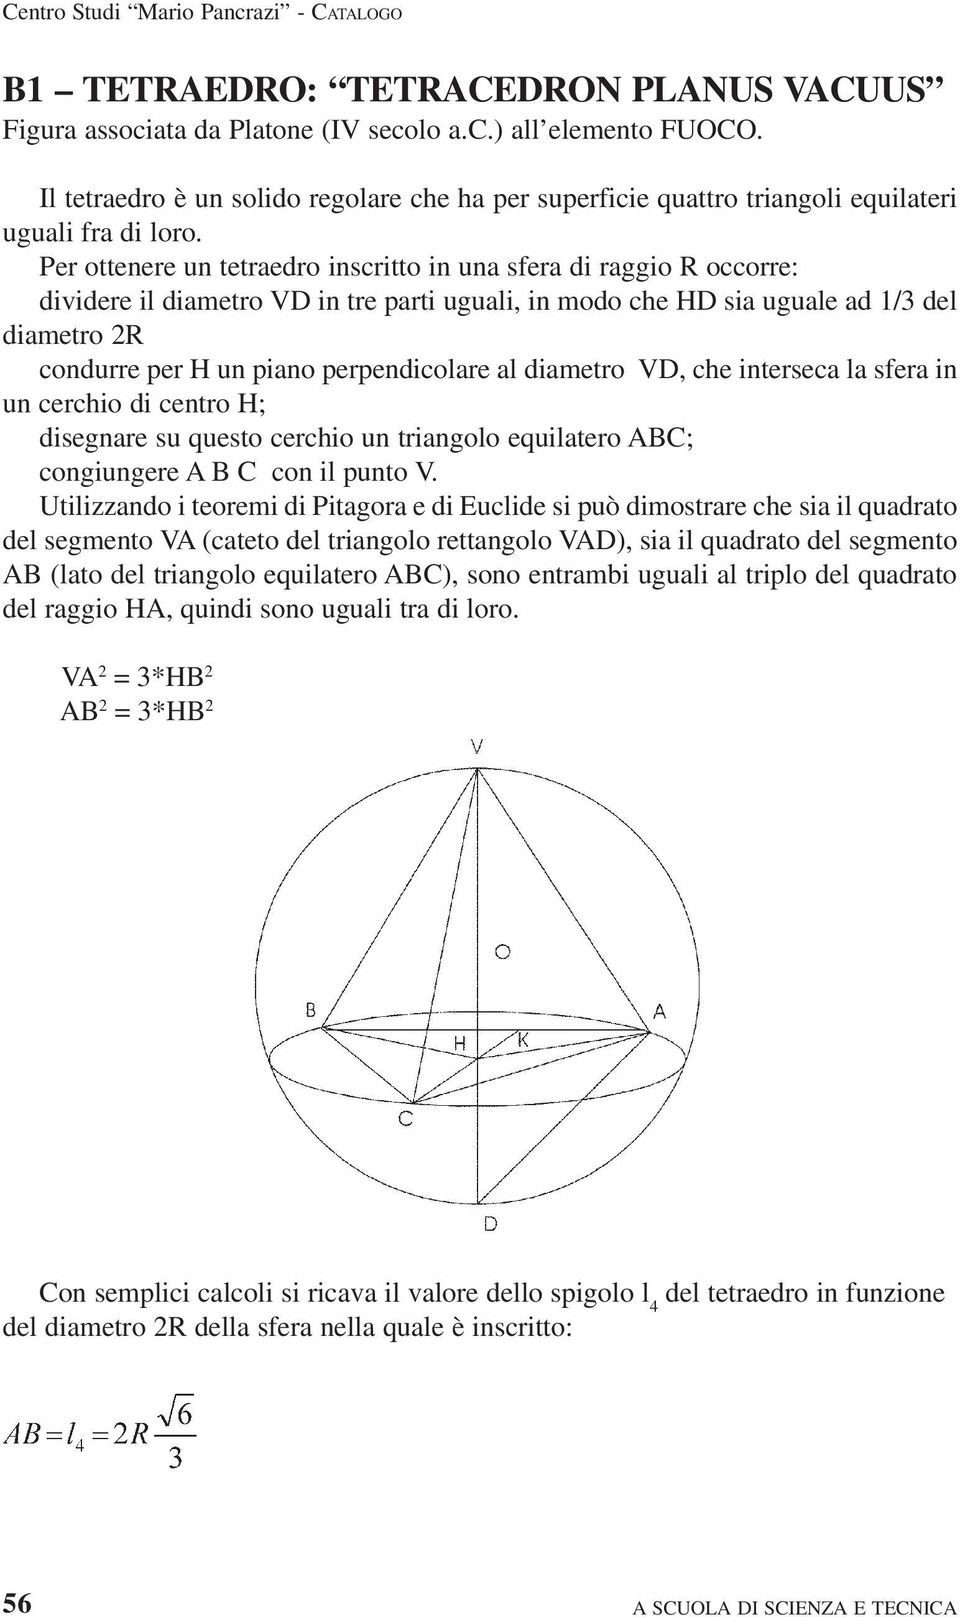 Per ottenere un tetraedro inscritto in una sfera di raggio R occorre: dividere il diametro VD in tre parti uguali, in modo che HD sia uguale ad 1/3 del diametro 2R condurre per H un piano